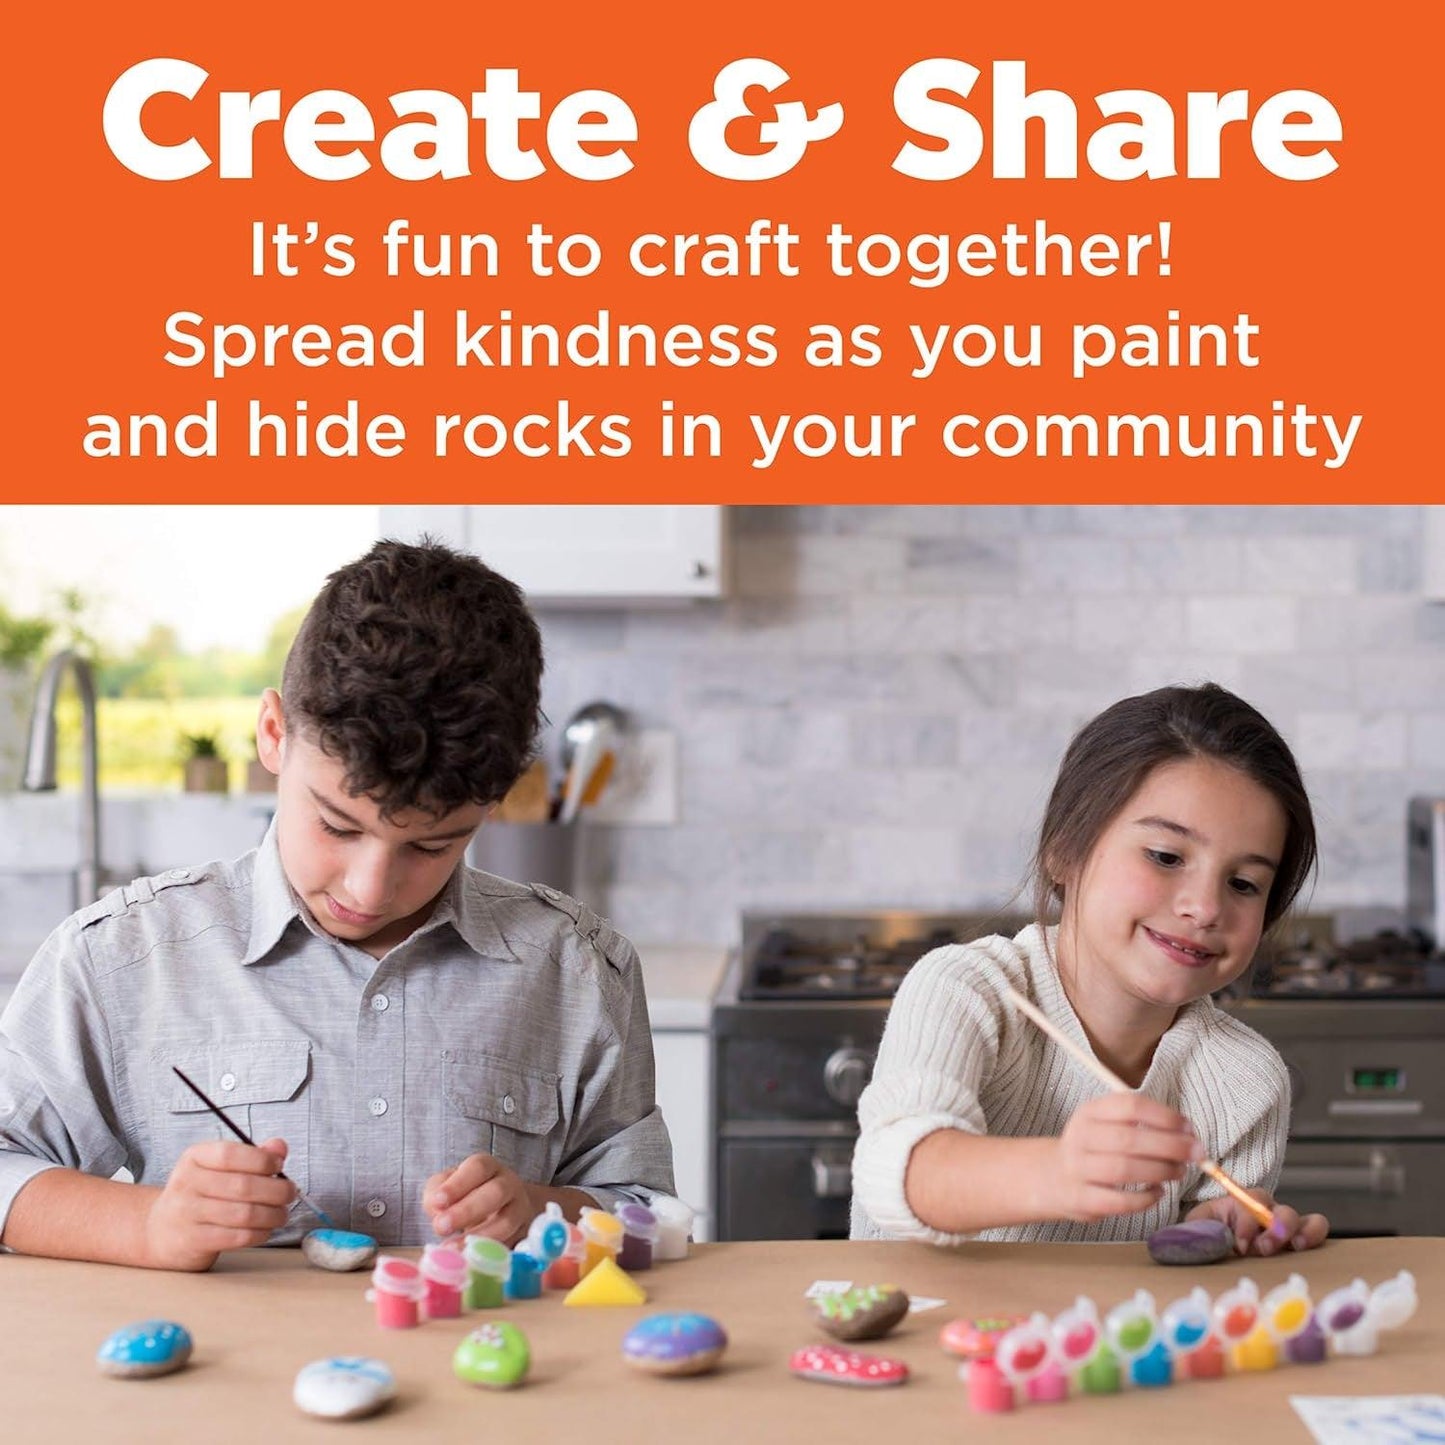 Hide & Seek Rock Painting Kit - Arts & Crafts for Kids - Includes Rocks & Waterproof Paint - WoodArtSupply